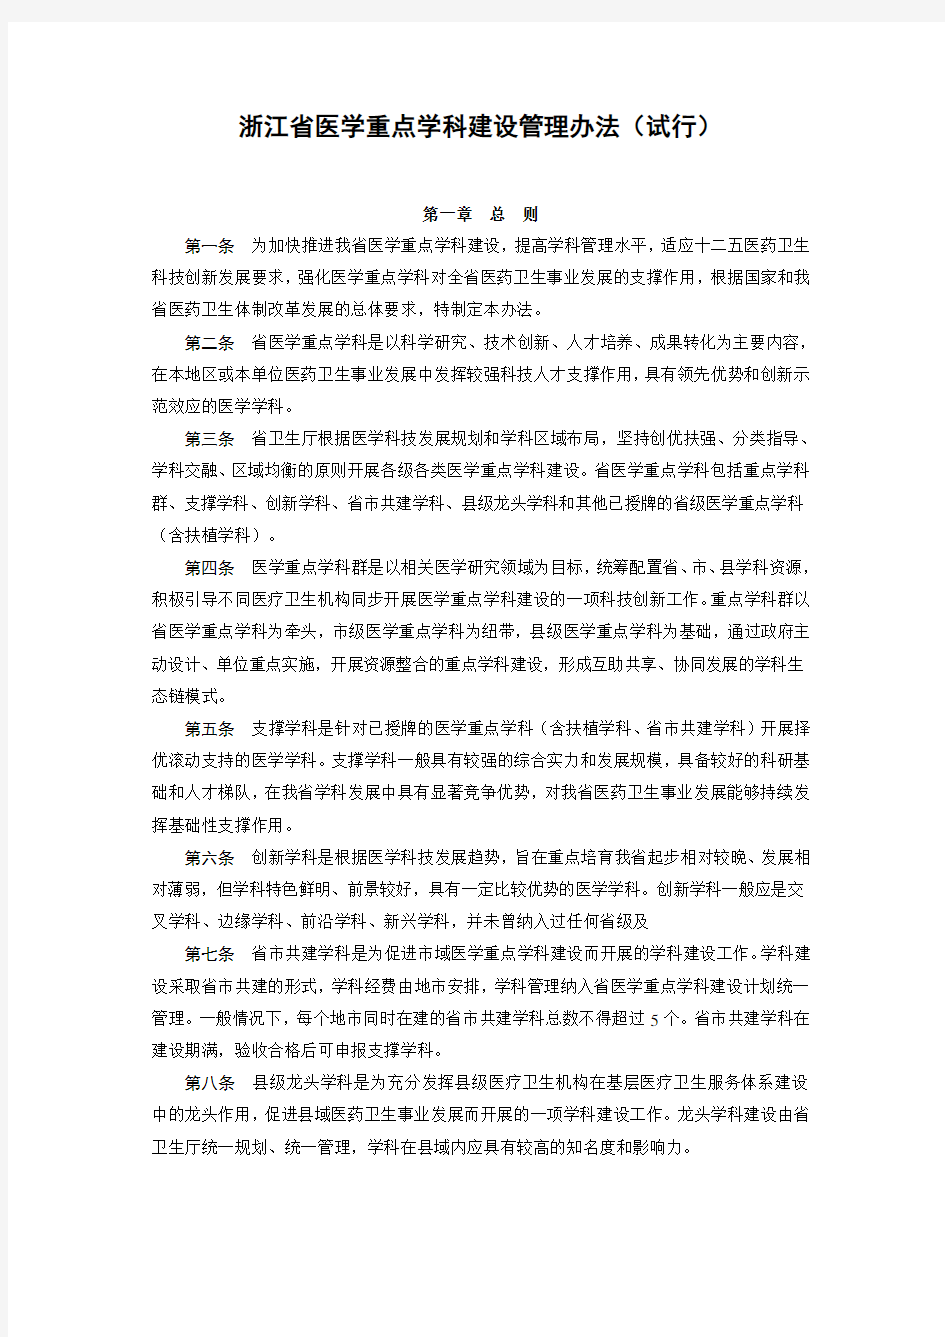 浙江省医学重点学科建设管理办法(试行)